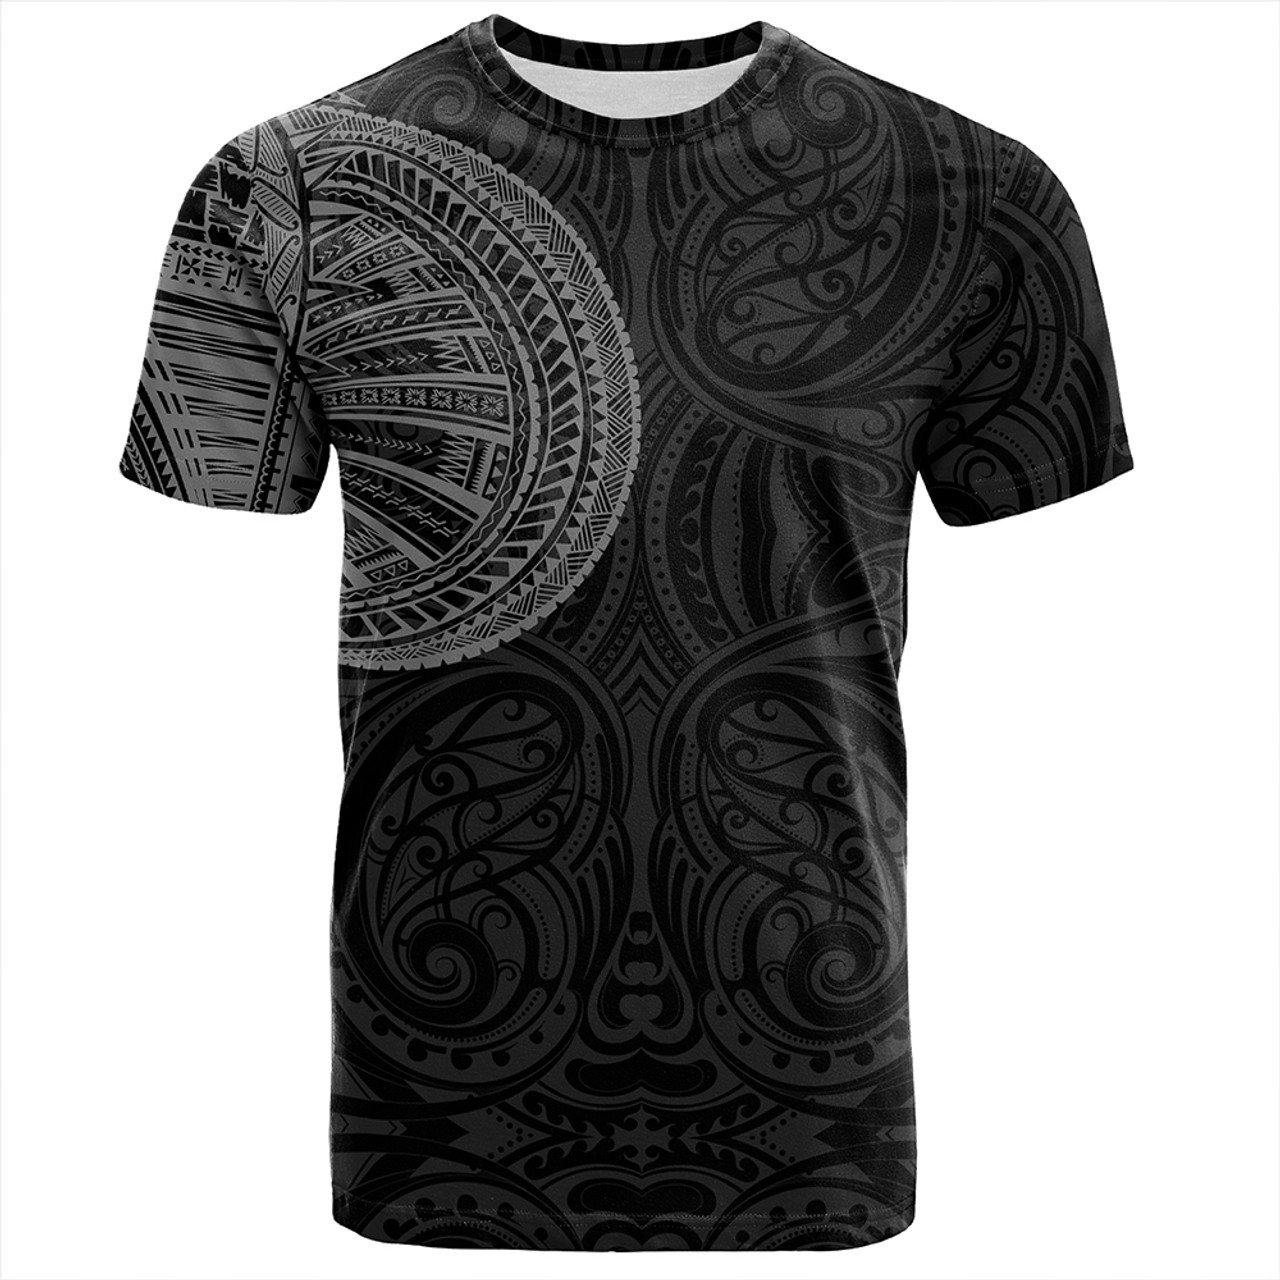 Samoa Tribal Maori Tattoo Roman Reigns T-Shirt Gray